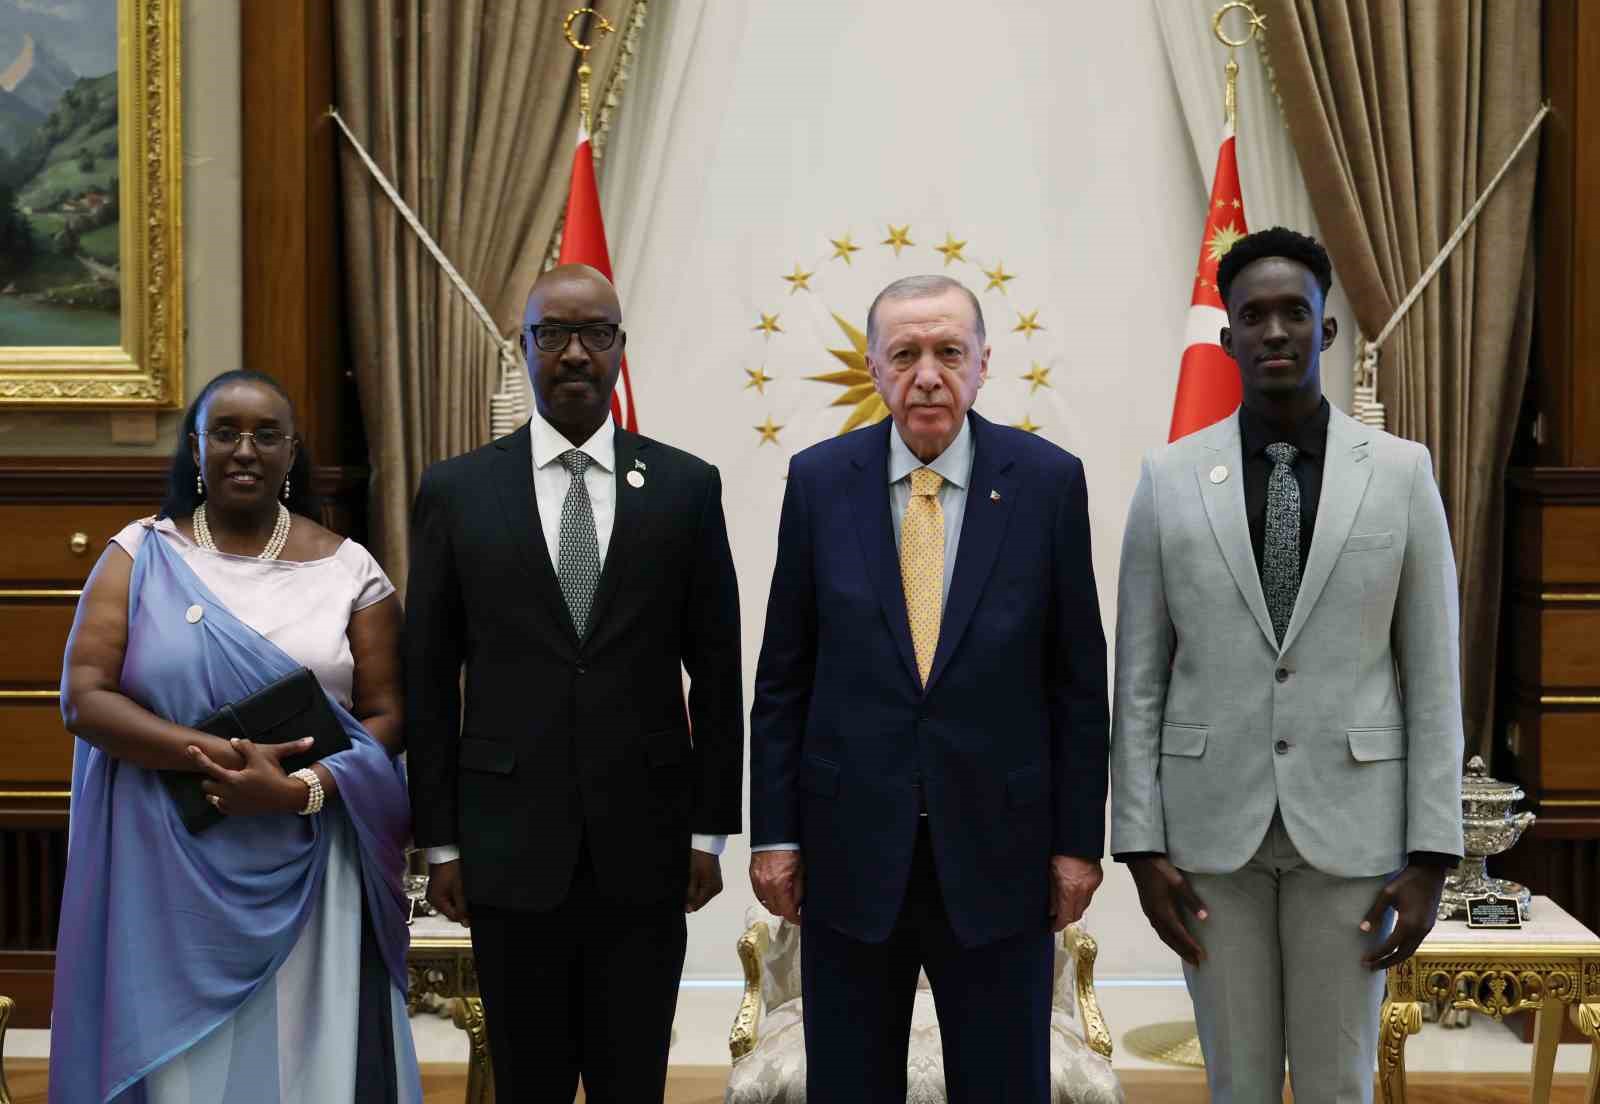 cumhurbaşkanı erdoğan’a ruanda ve nikaragua büyükelçilerinden güven mektubu